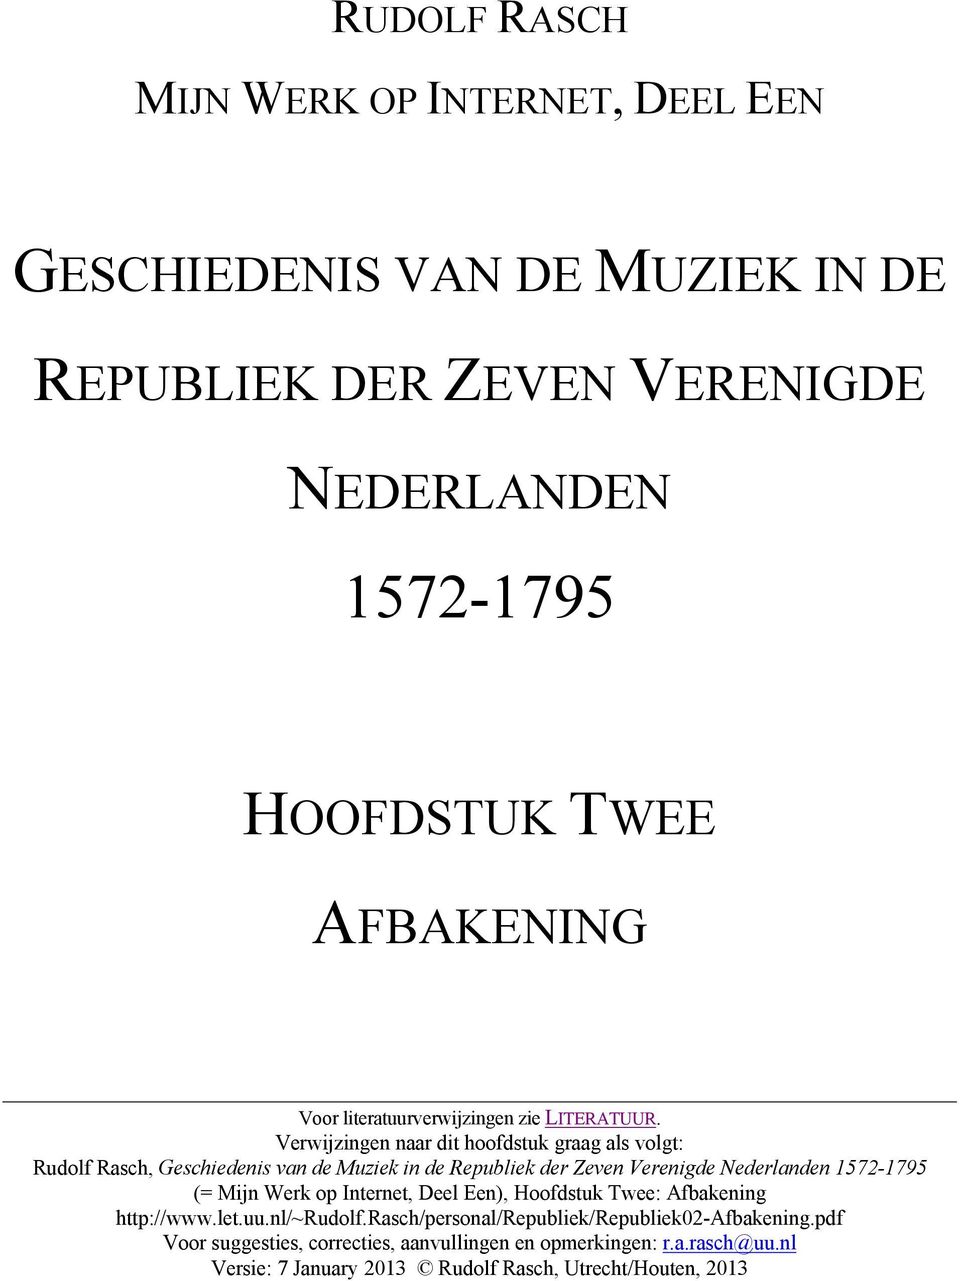 Verwijzingen naar dit hoofdstuk graag als volgt: Rudolf Rasch, Geschiedenis van de Muziek in de Republiek der Zeven Verenigde Nederlanden 1572-1795 (= Mijn